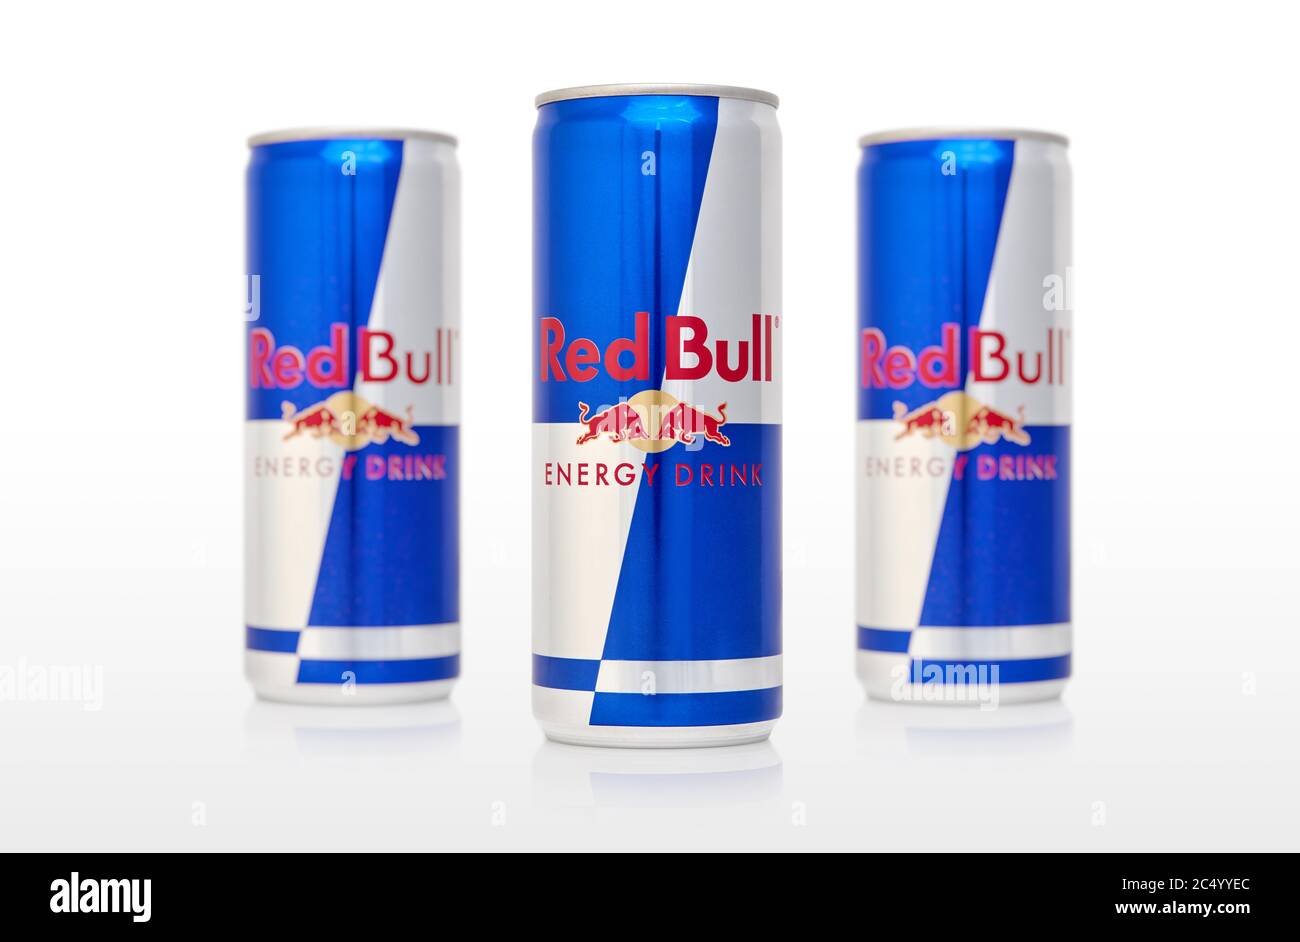 Aluminiumkrülle Red Bull Energy Drink zuckerfrei.Red Bull ist das beliebteste Energy Drink der Welt. 11.07.2017, Rostow-am-Don. Russland. Stockfoto